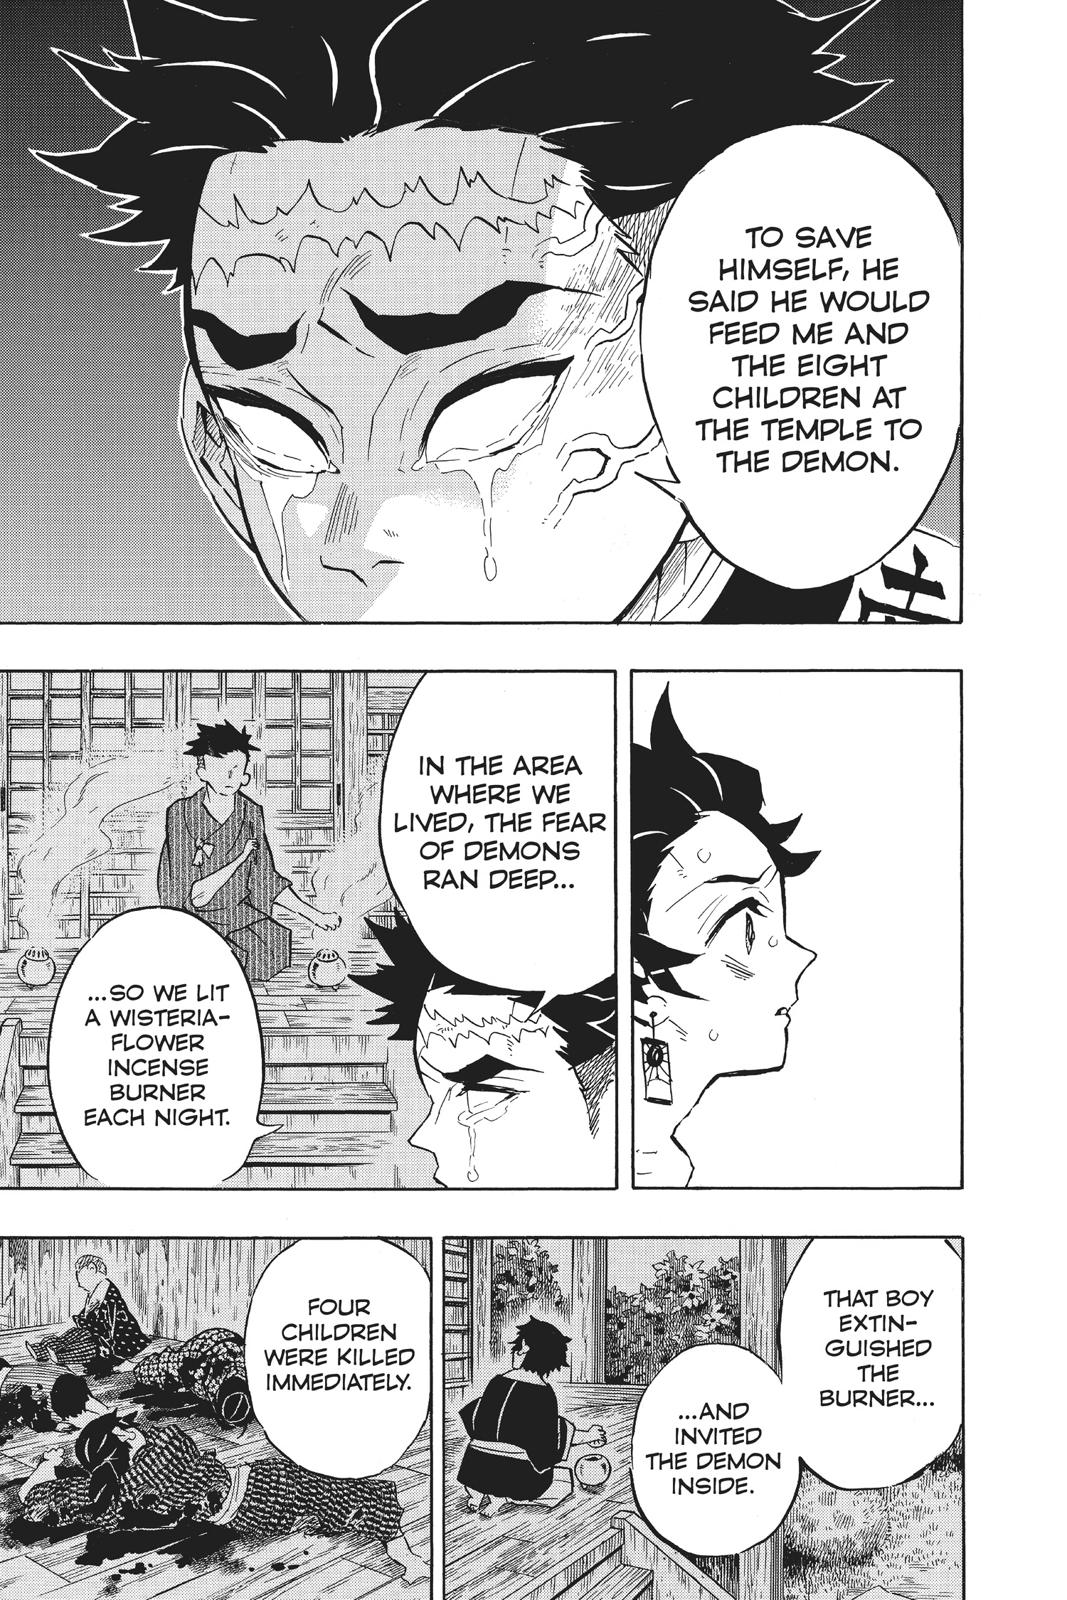 Demon Slayer Manga Manga Chapter - 135 - image 11